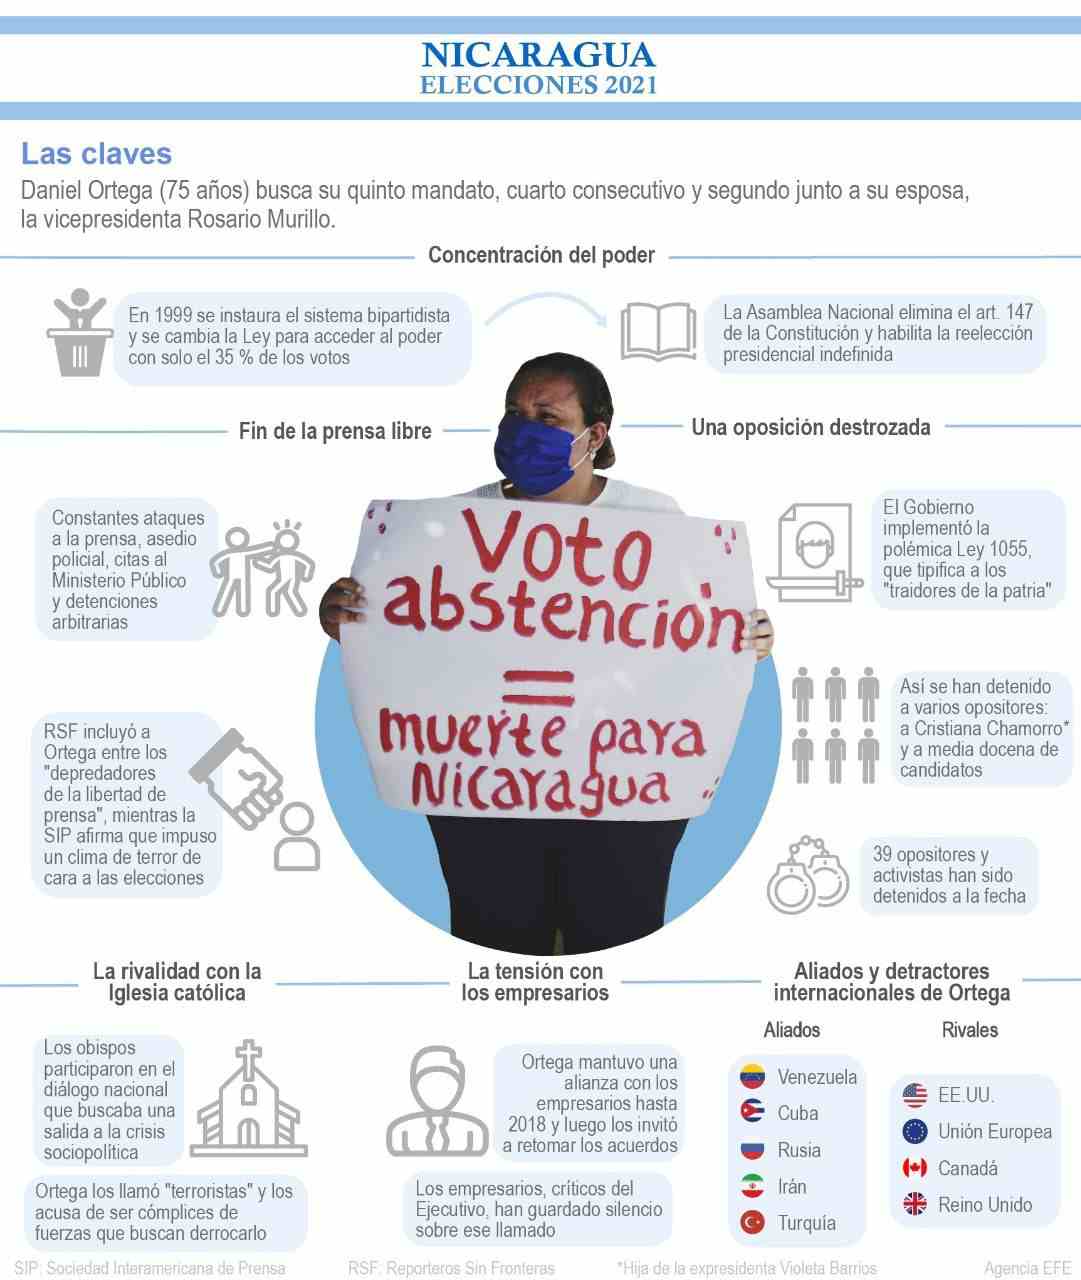 [Infografía] Elecciones en Nicaragua 2021 - las claves 1